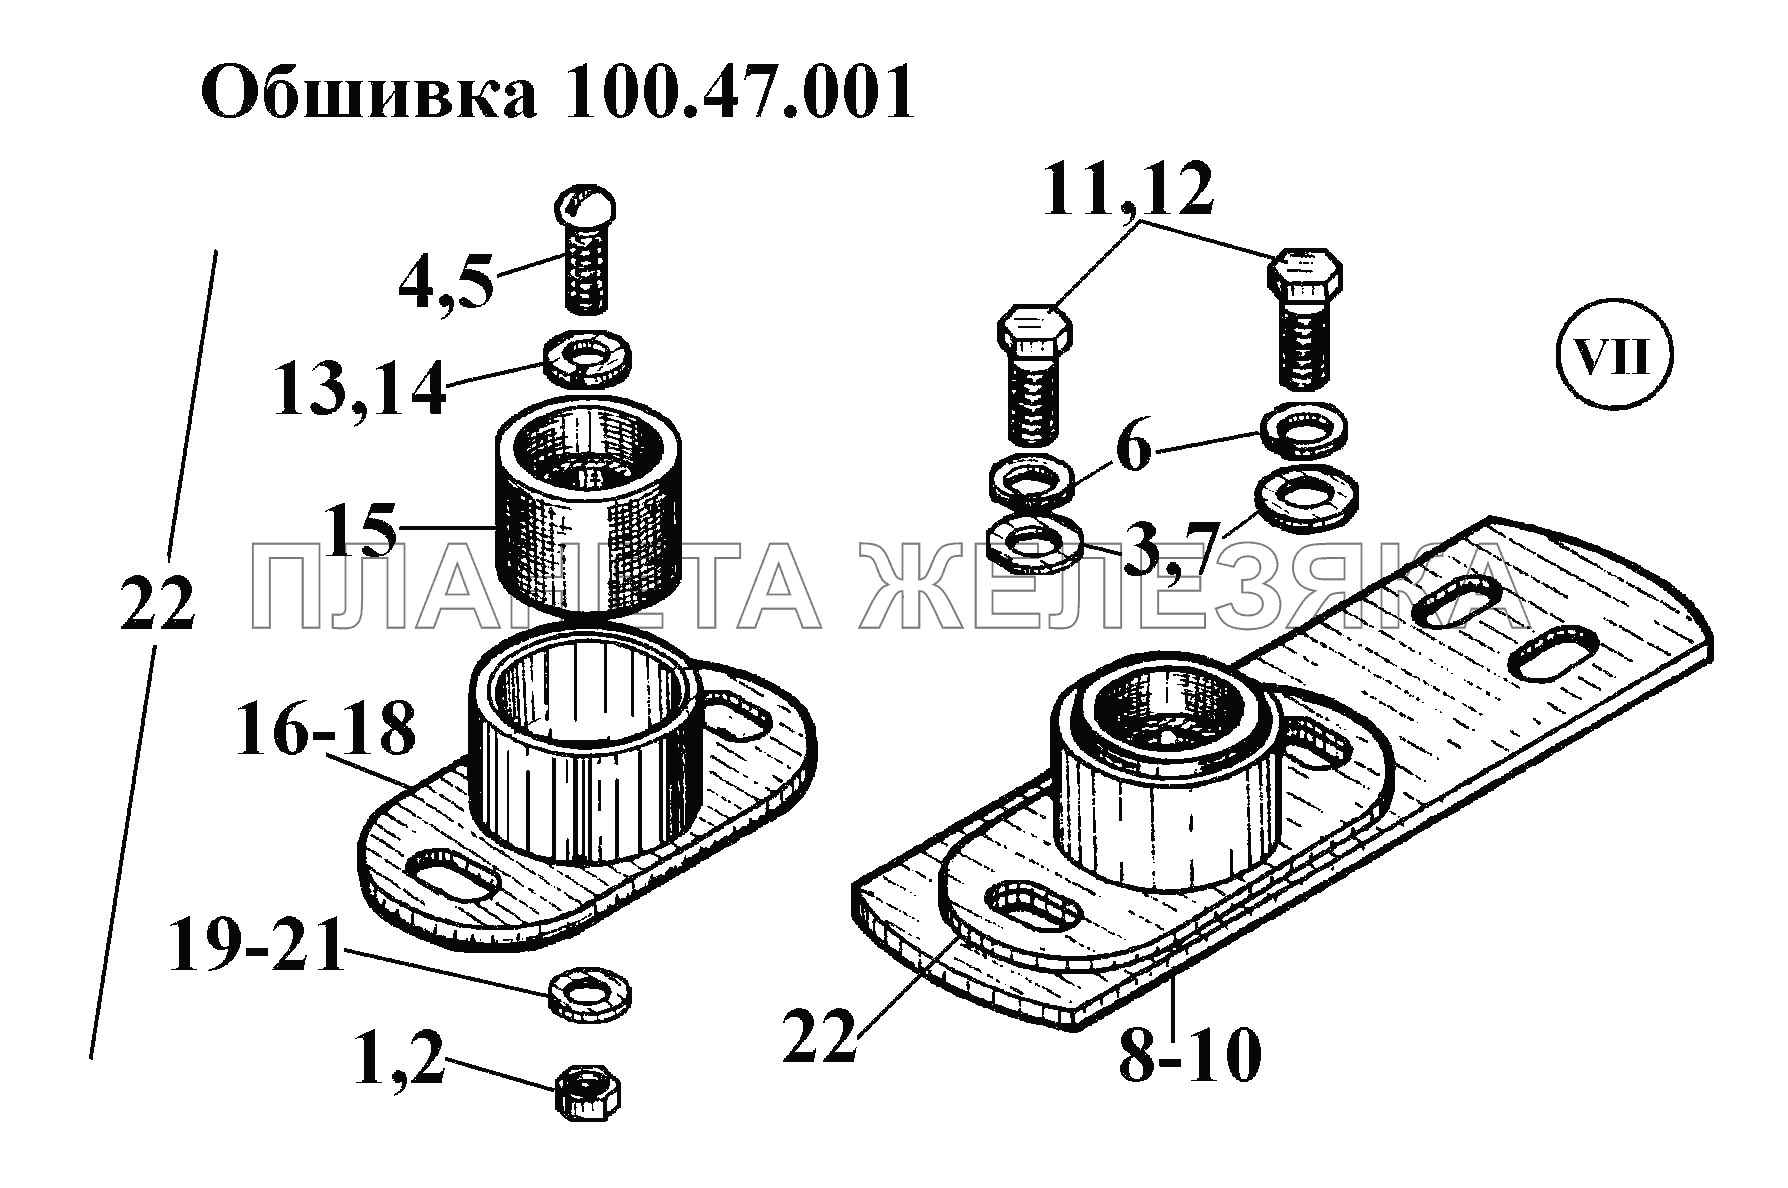 Обшивка 100.47.001 (8) ВТ-100Д